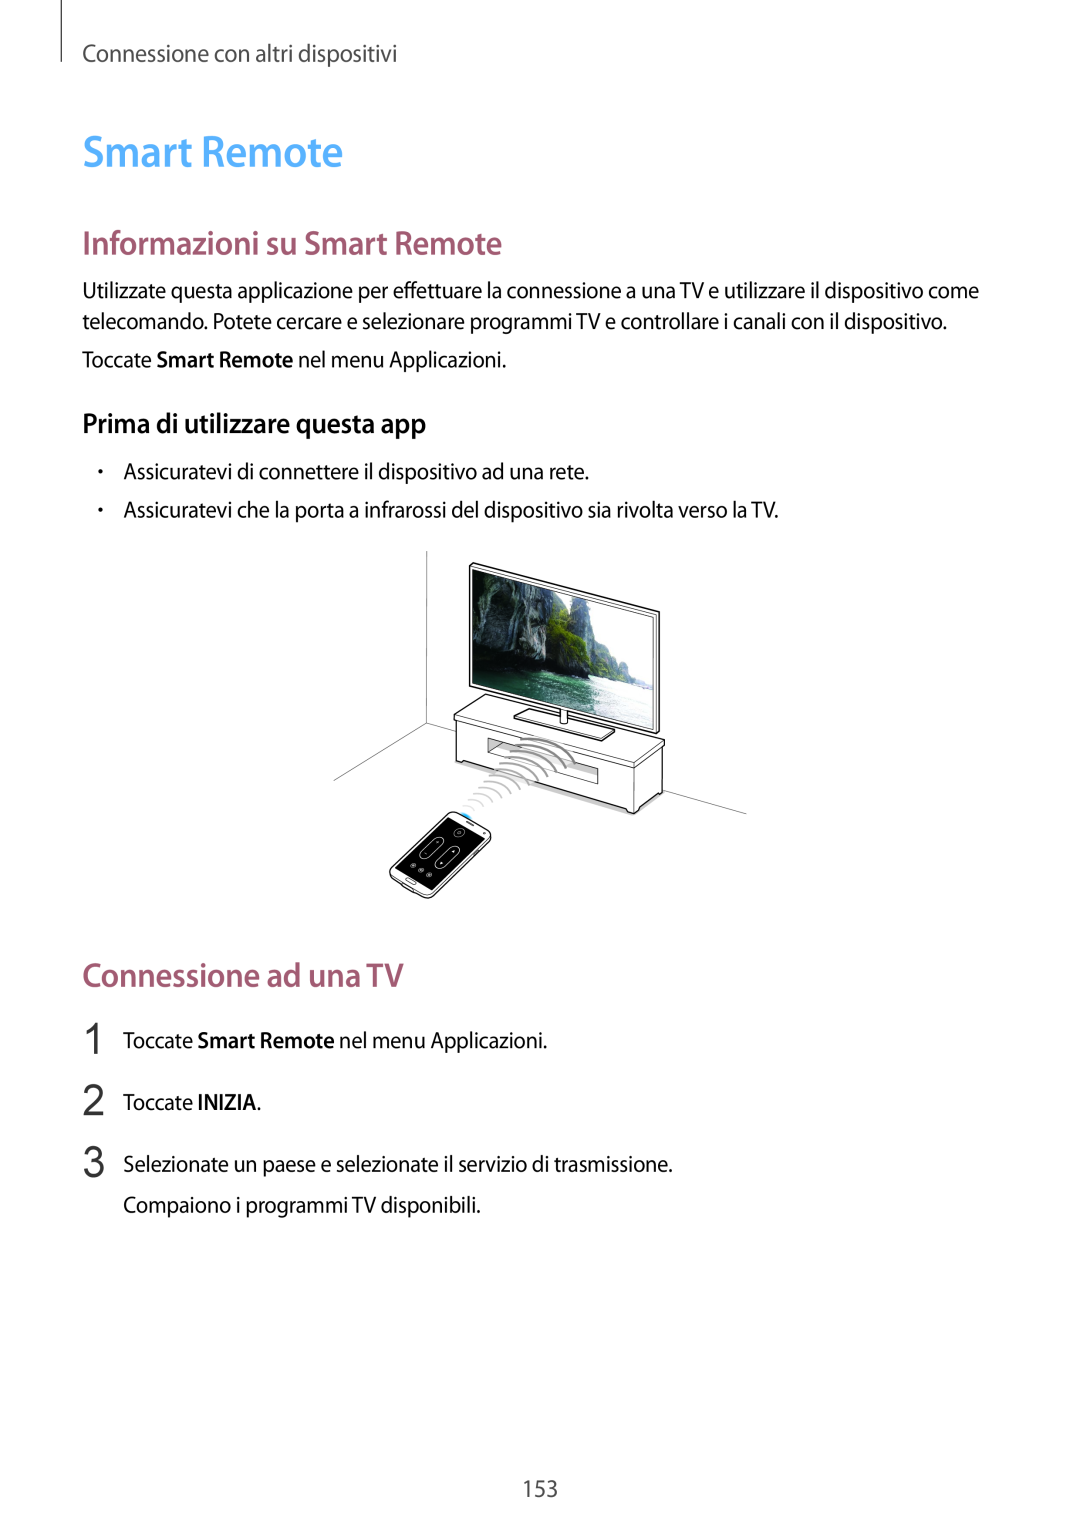 Samsung SM-G900FZKAAUT manual Informazioni su Smart Remote, Prima di utilizzare questa app, Connessione ad una TV 